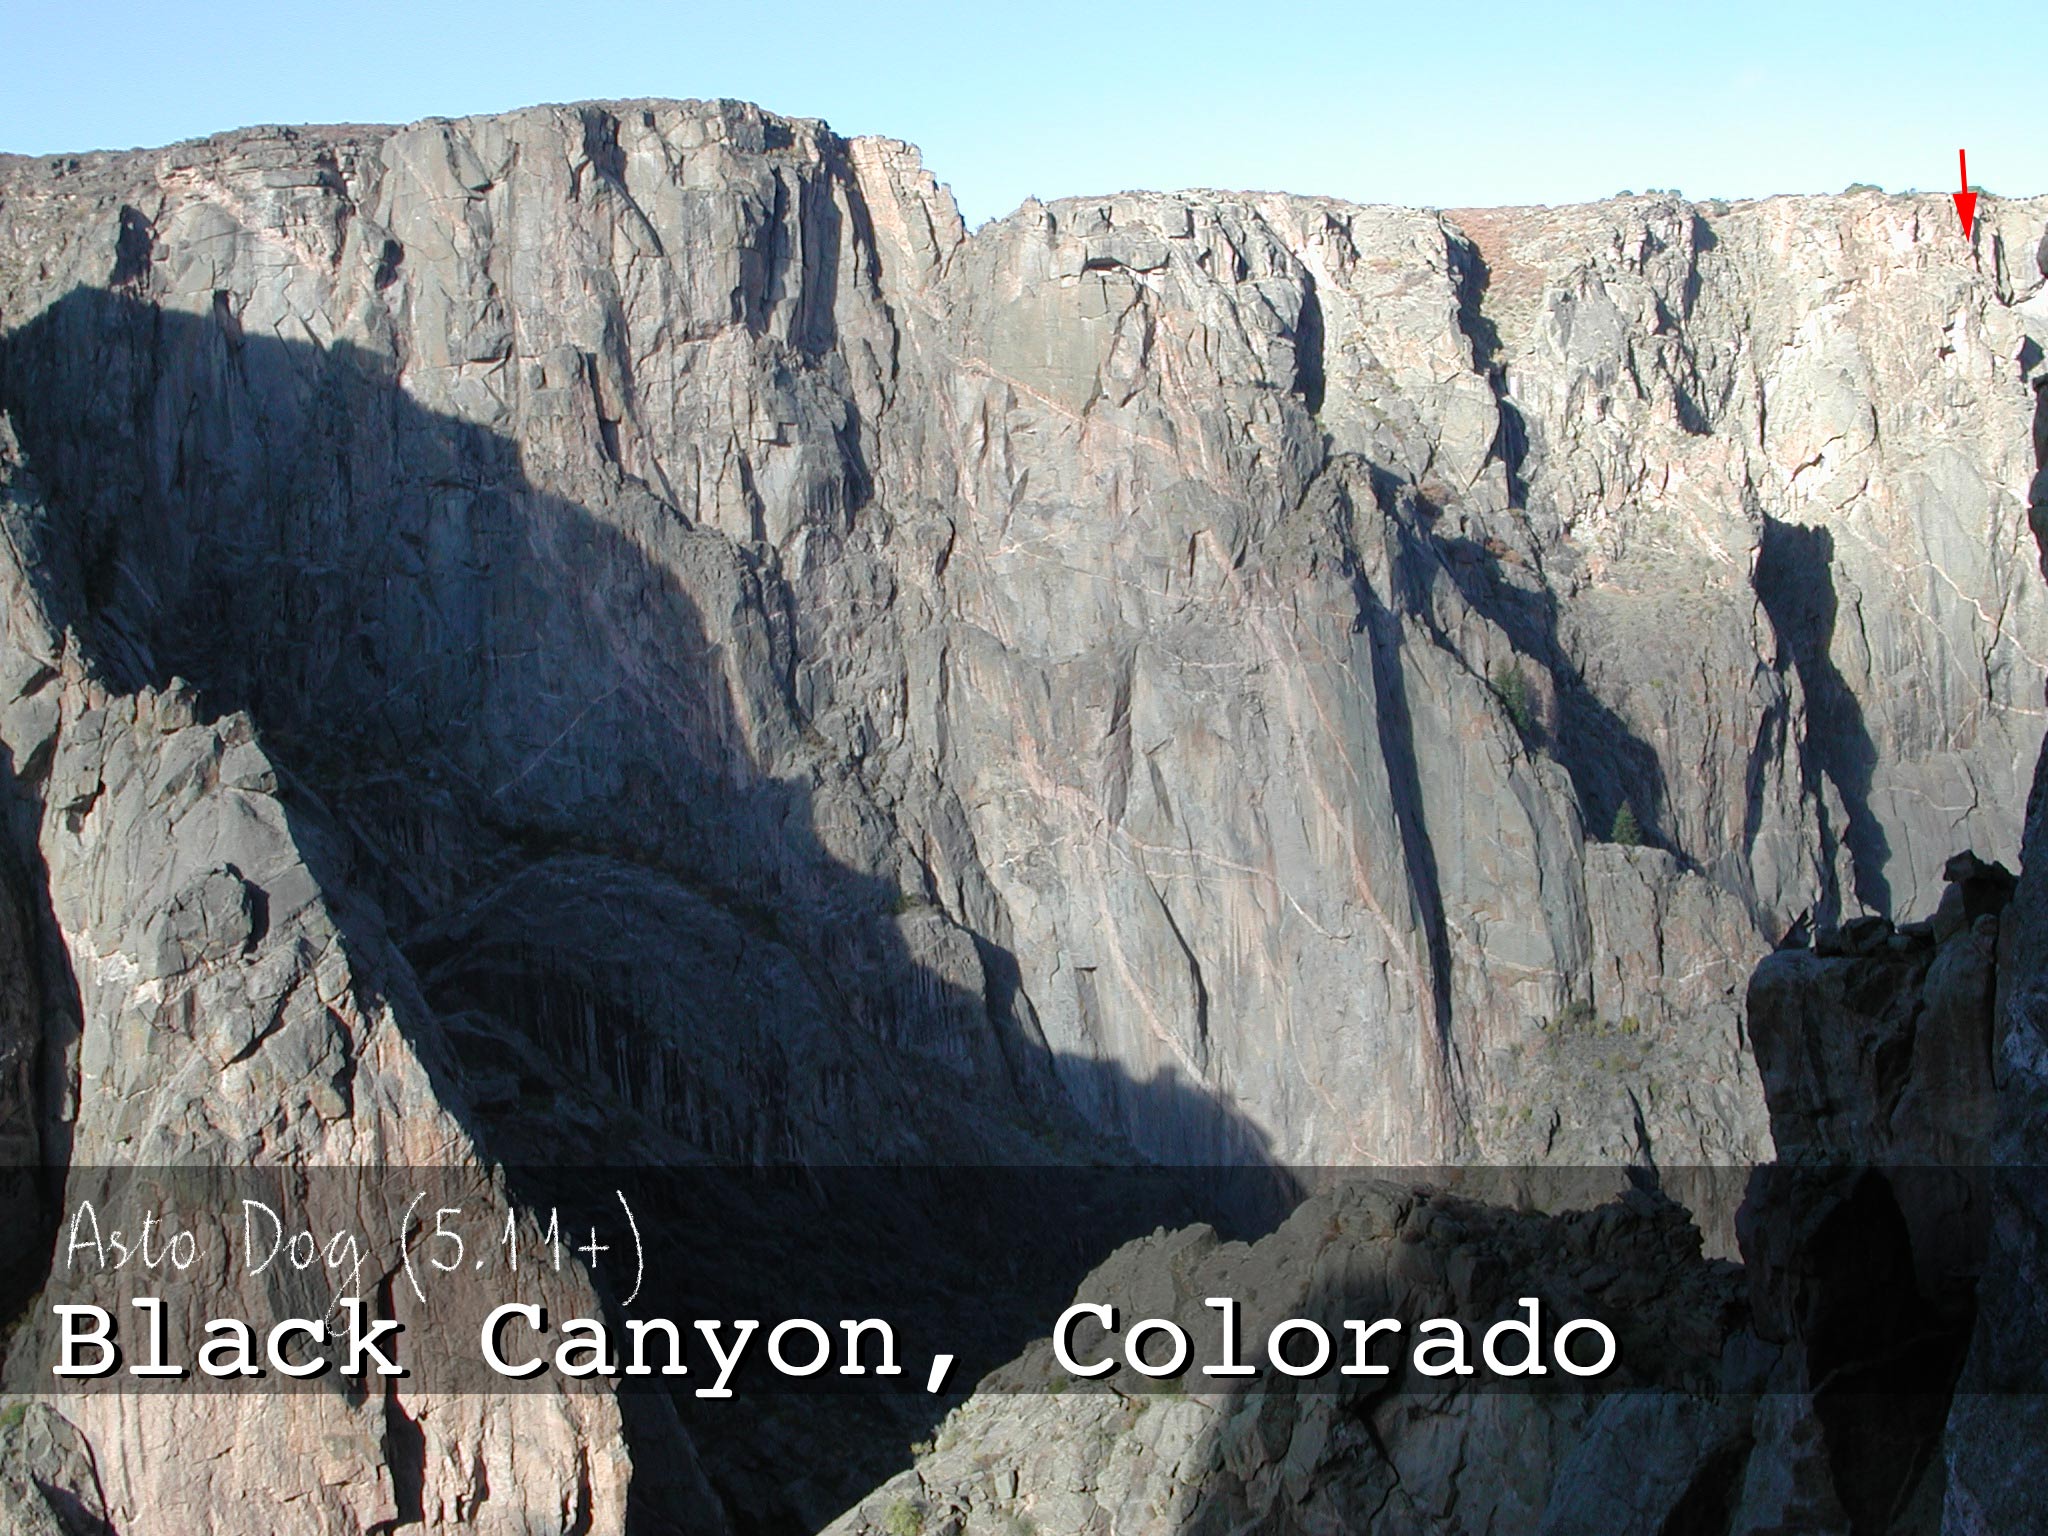 Black Canyon, Colorado